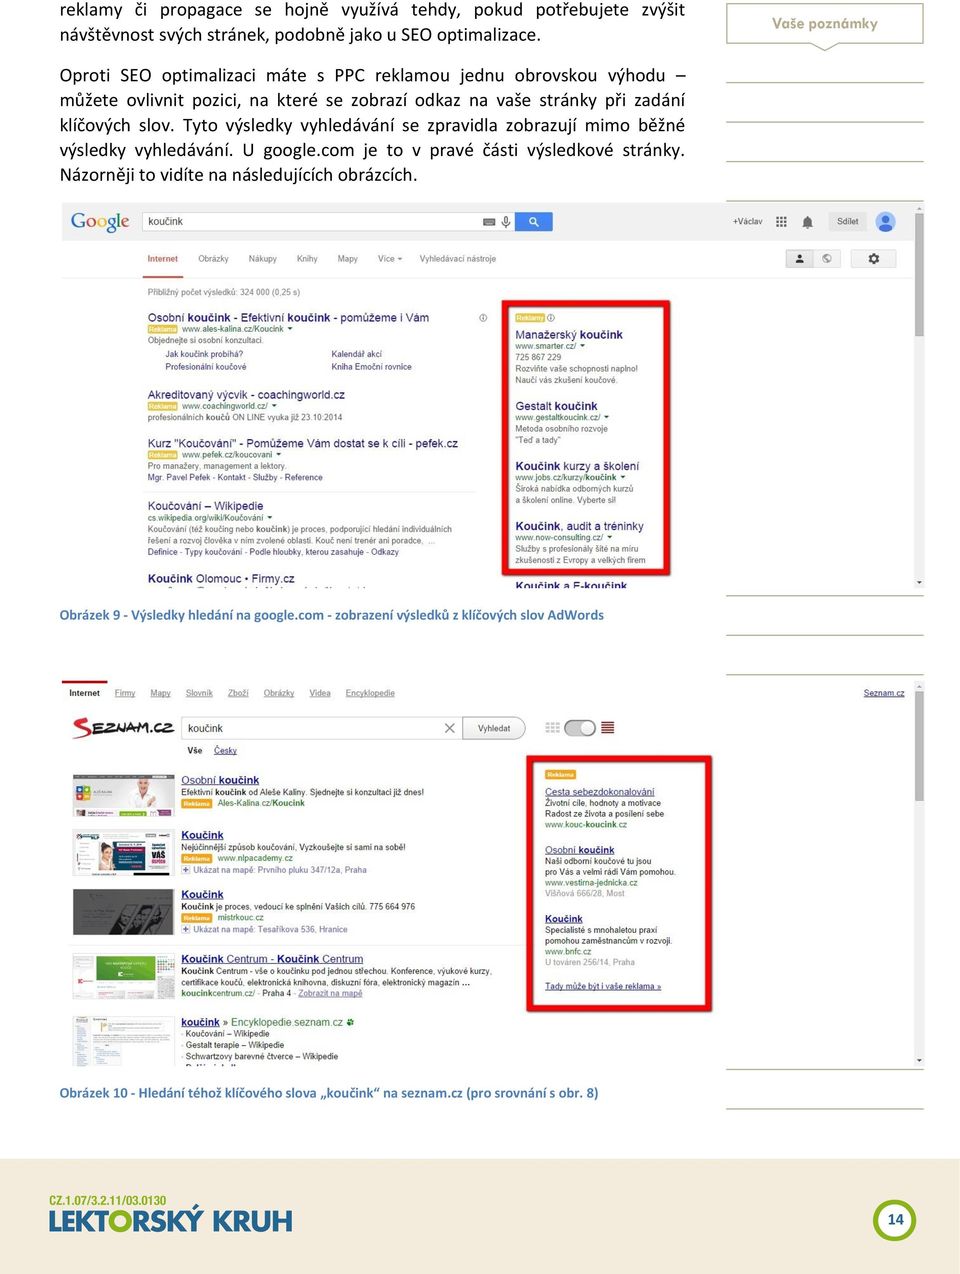 Tyto výsledky vyhledávání se zpravidla zobrazují mimo běžné výsledky vyhledávání. U google.com je to v pravé části výsledkové stránky.